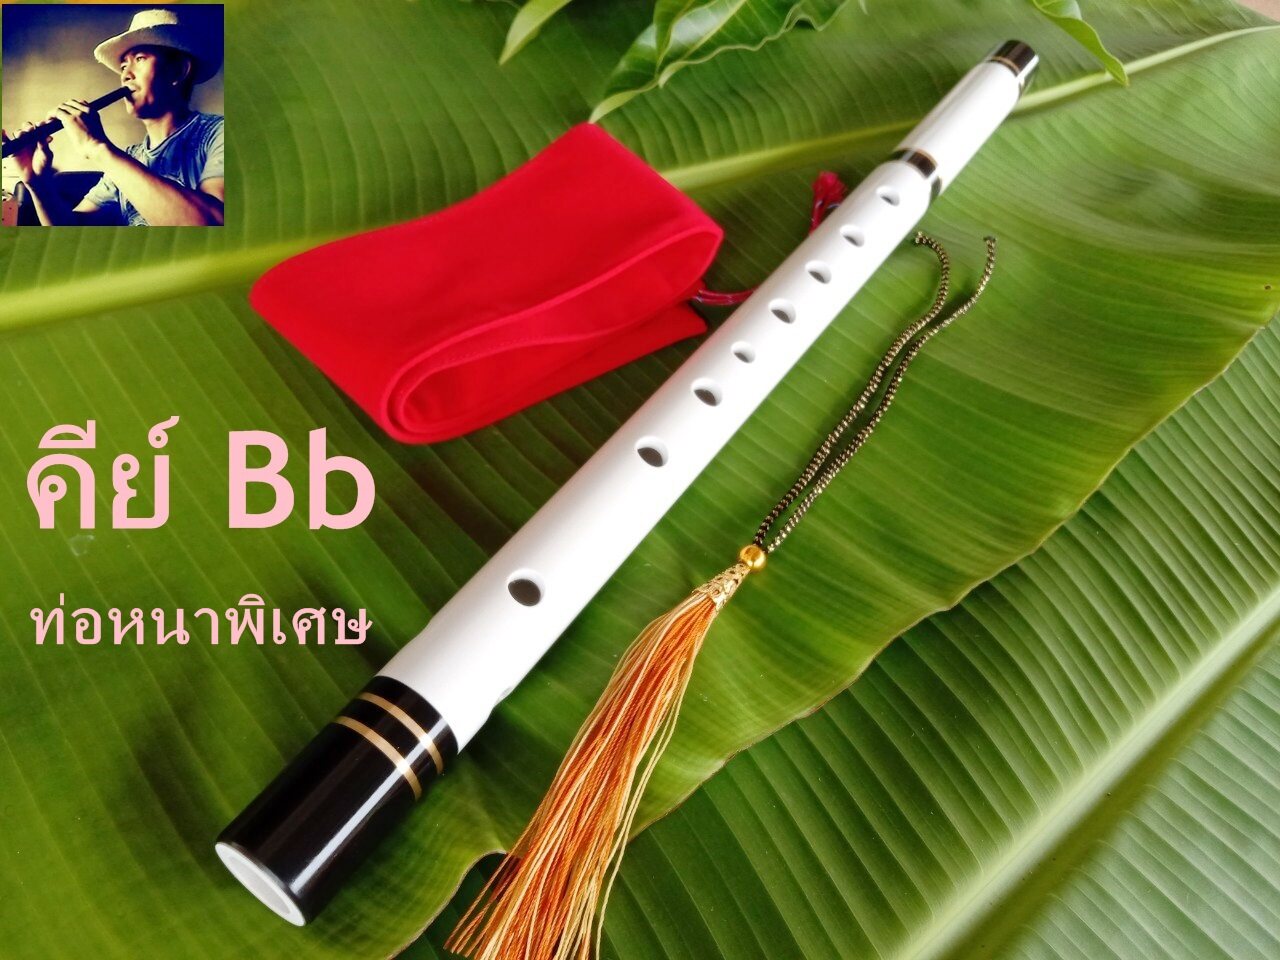 ขลุ่ยคีย์Bb ขลุ่ยไทย ขลุ่ยเพียงออ ขลุ่ยสากล เนื้อโพลิเมอร์ PE สีขาวสโนว์ คีย์Bb สำหรับประกวด Flute Key of Bb (ฆ่าเชื่อด้วยแอลกอฮอ ทุกเลาก่อนส่ง)